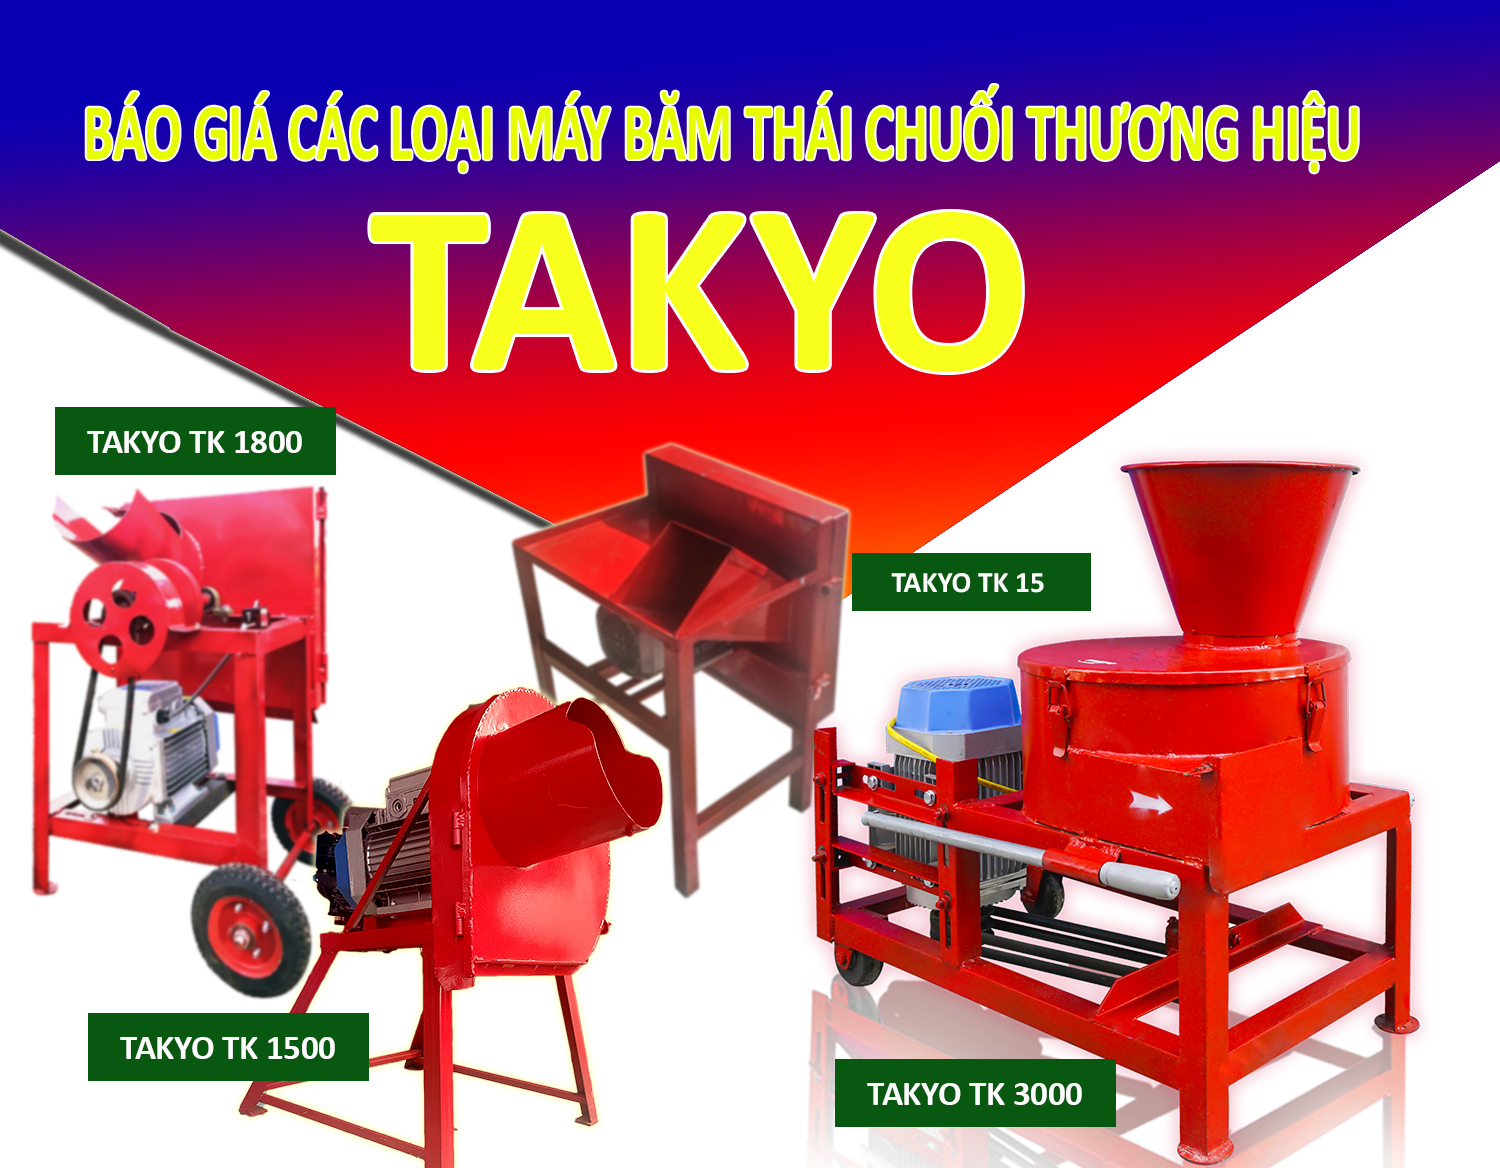 Tổng hợp các loại máy xay chuối, máy băm chuối Takyo